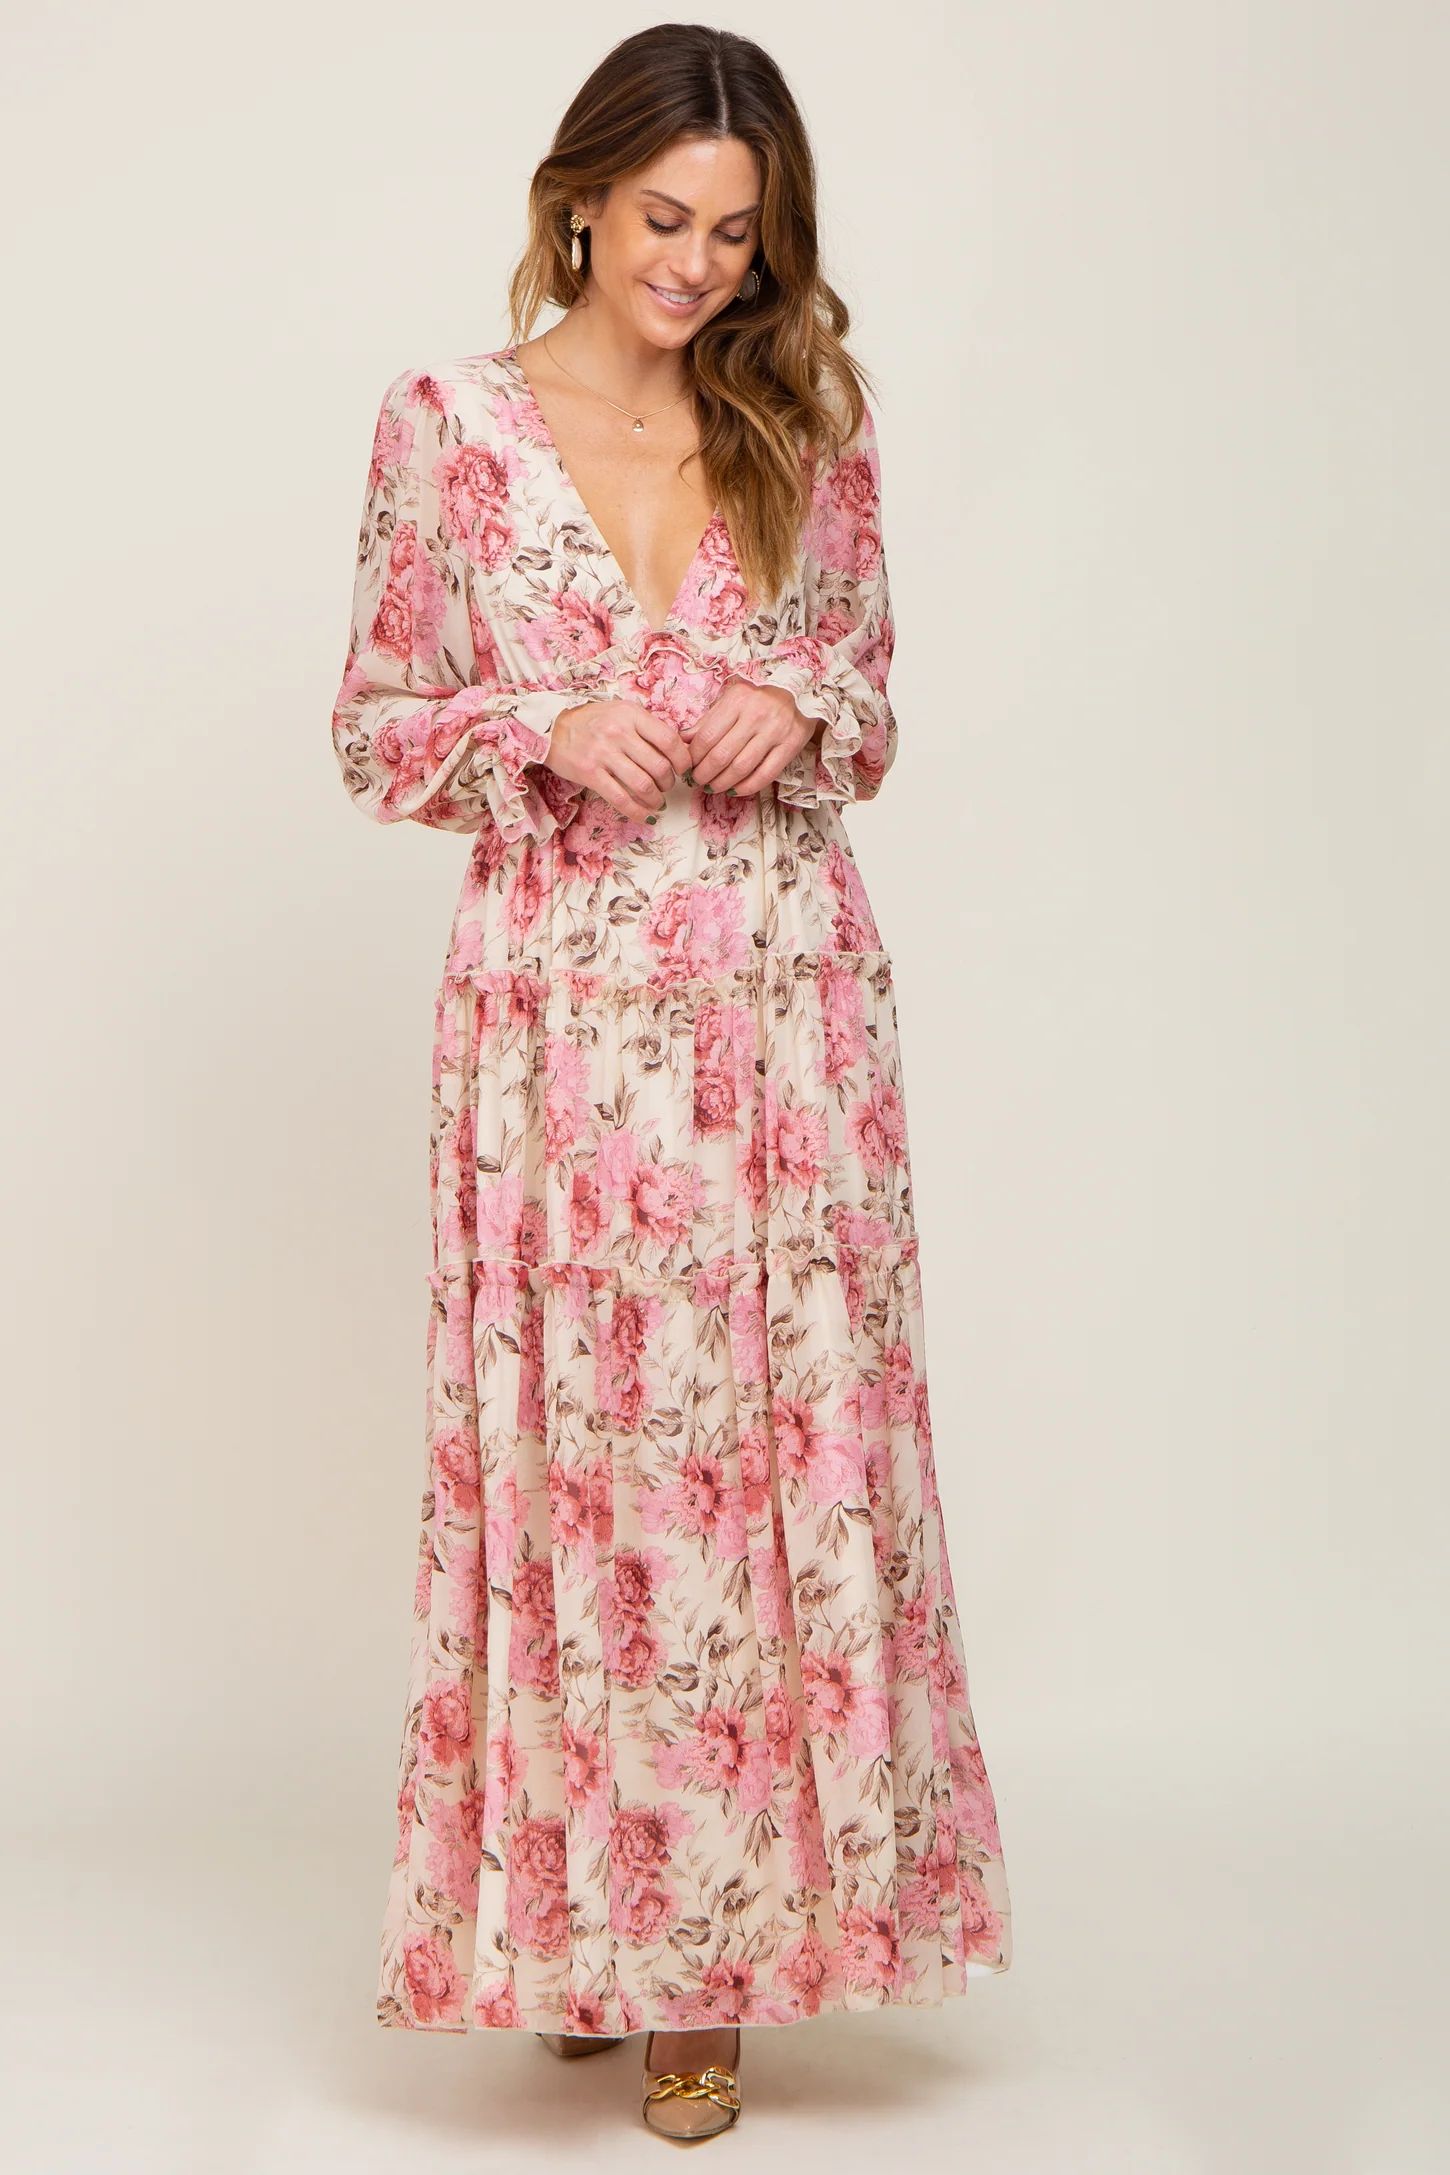 Ivory Floral Chiffon Ruffle Tiered Maxi Dress | PinkBlush Maternity